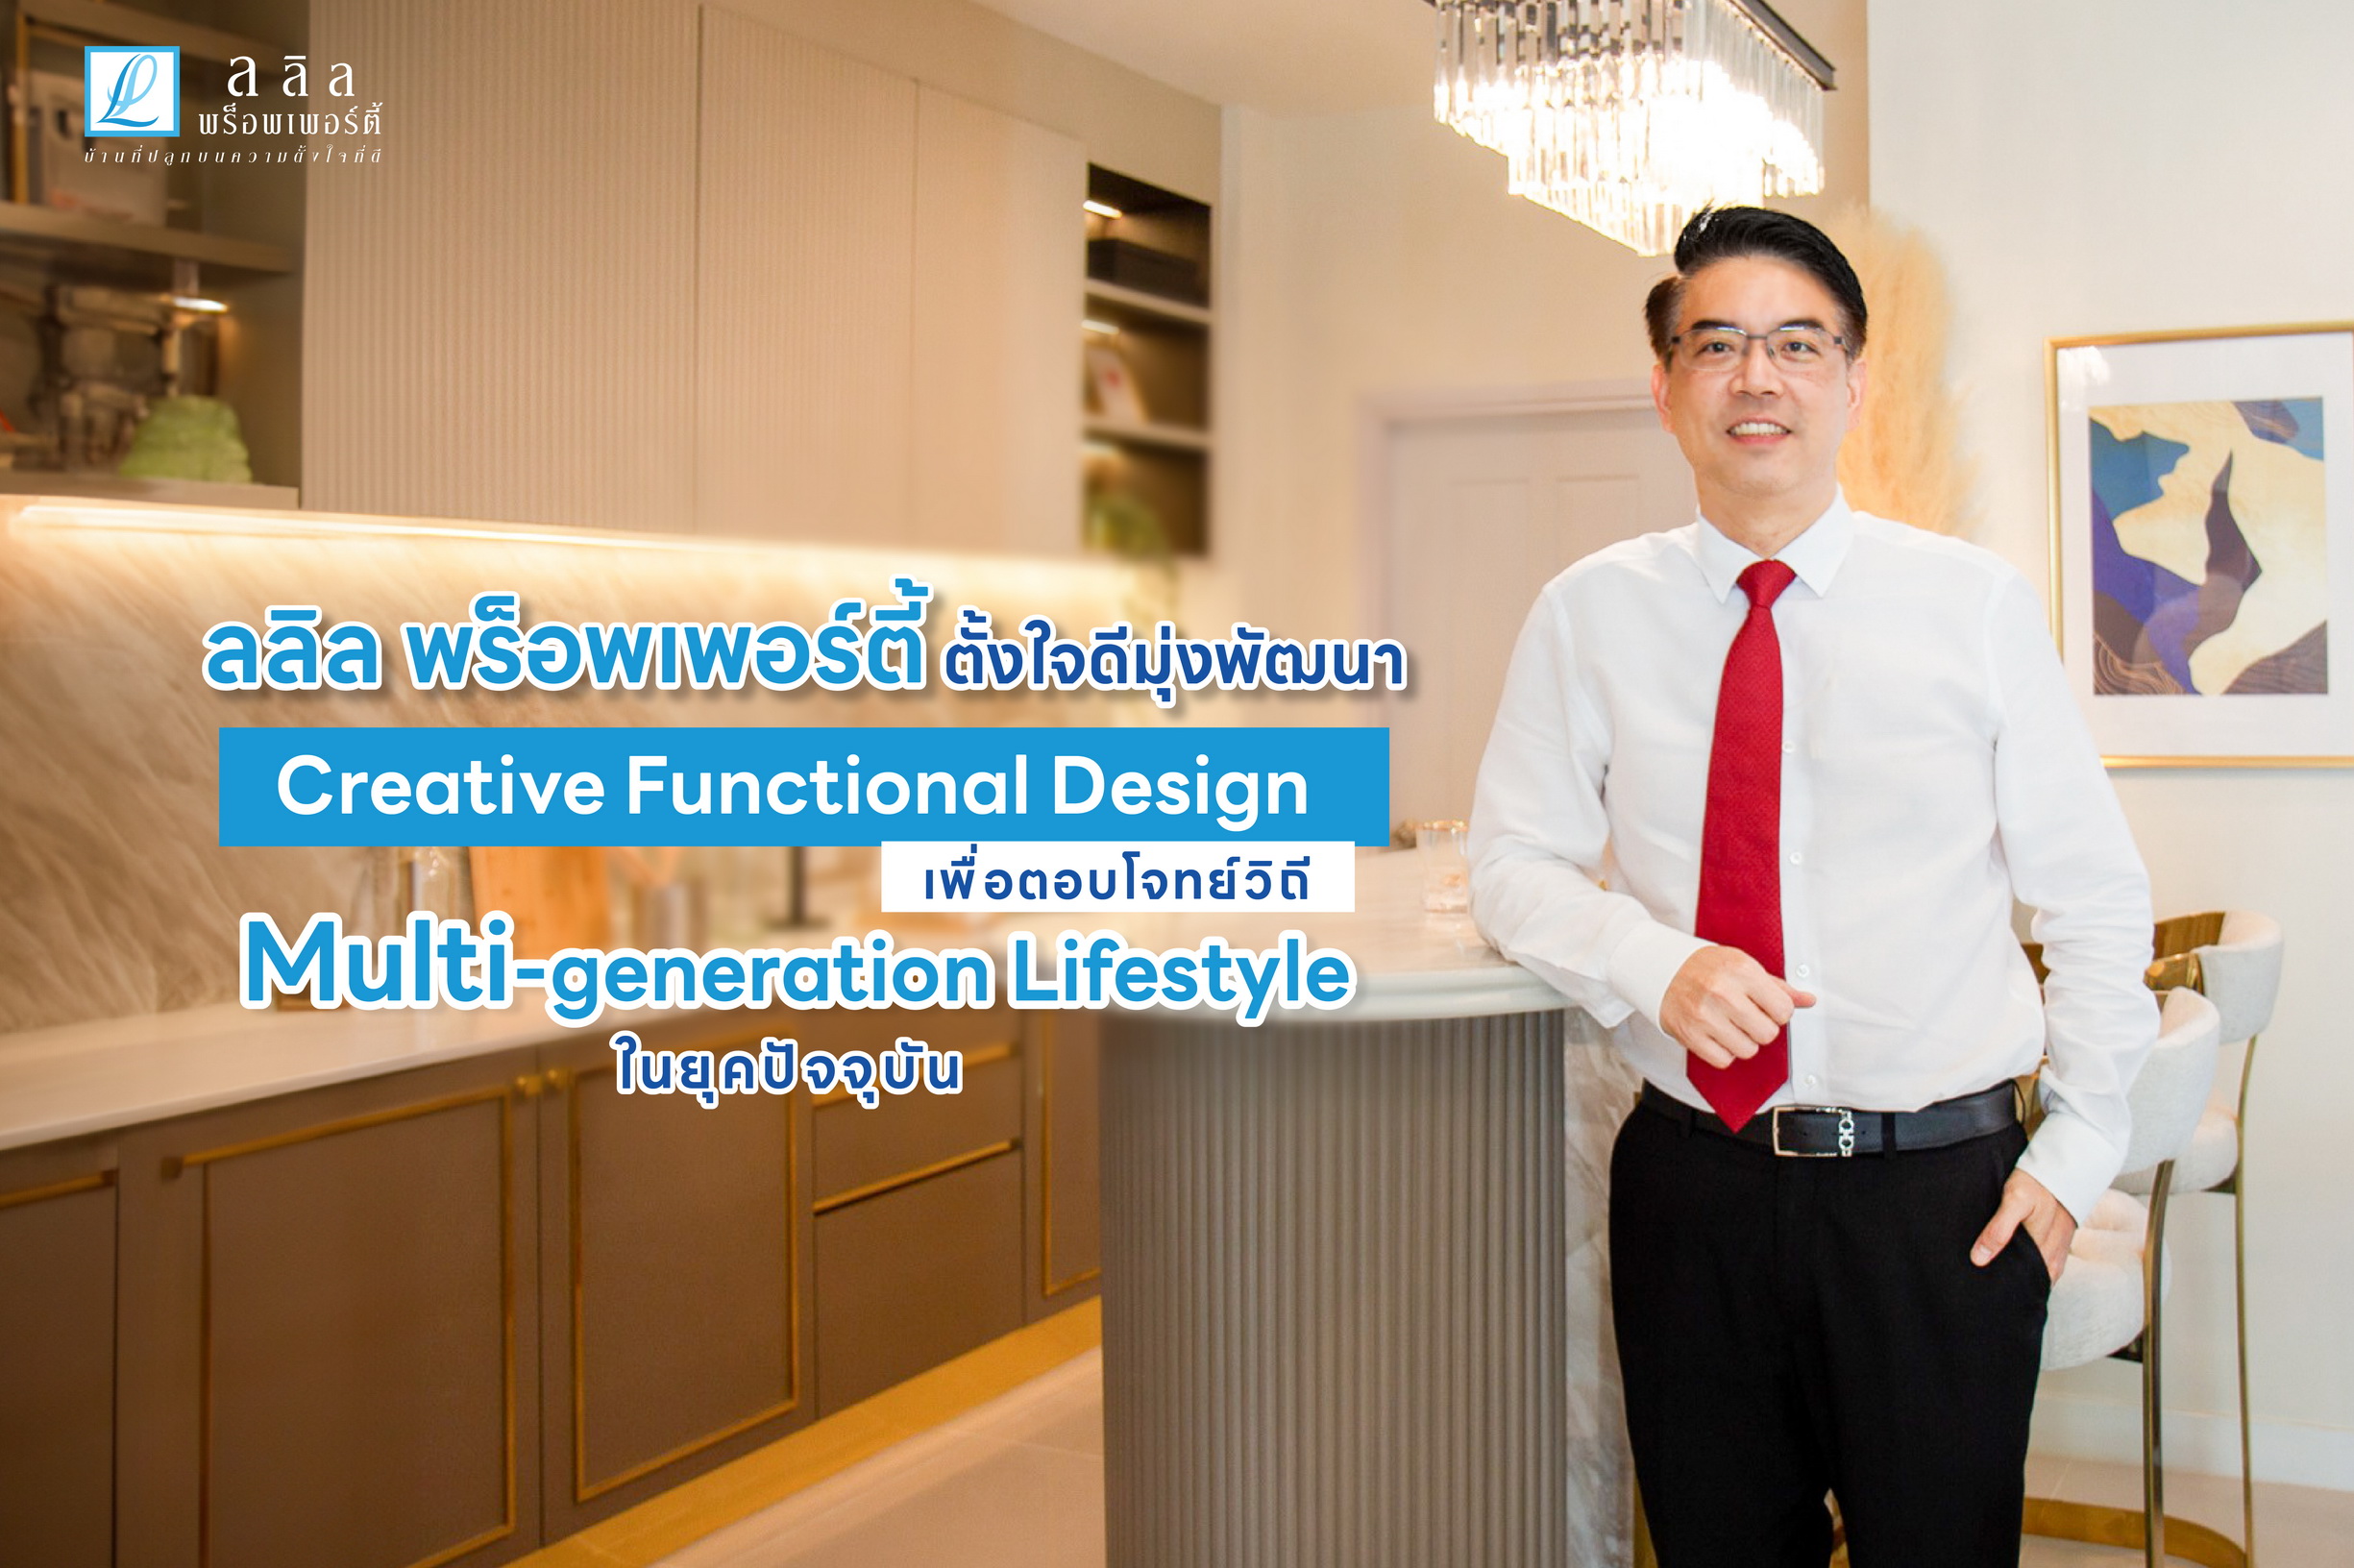 ลลิล พร็อพเพอร์ตี้ มุ่งพัฒนา Creative Functional Design ตอบโจทย์วิถี Multi-generation Lifestyle